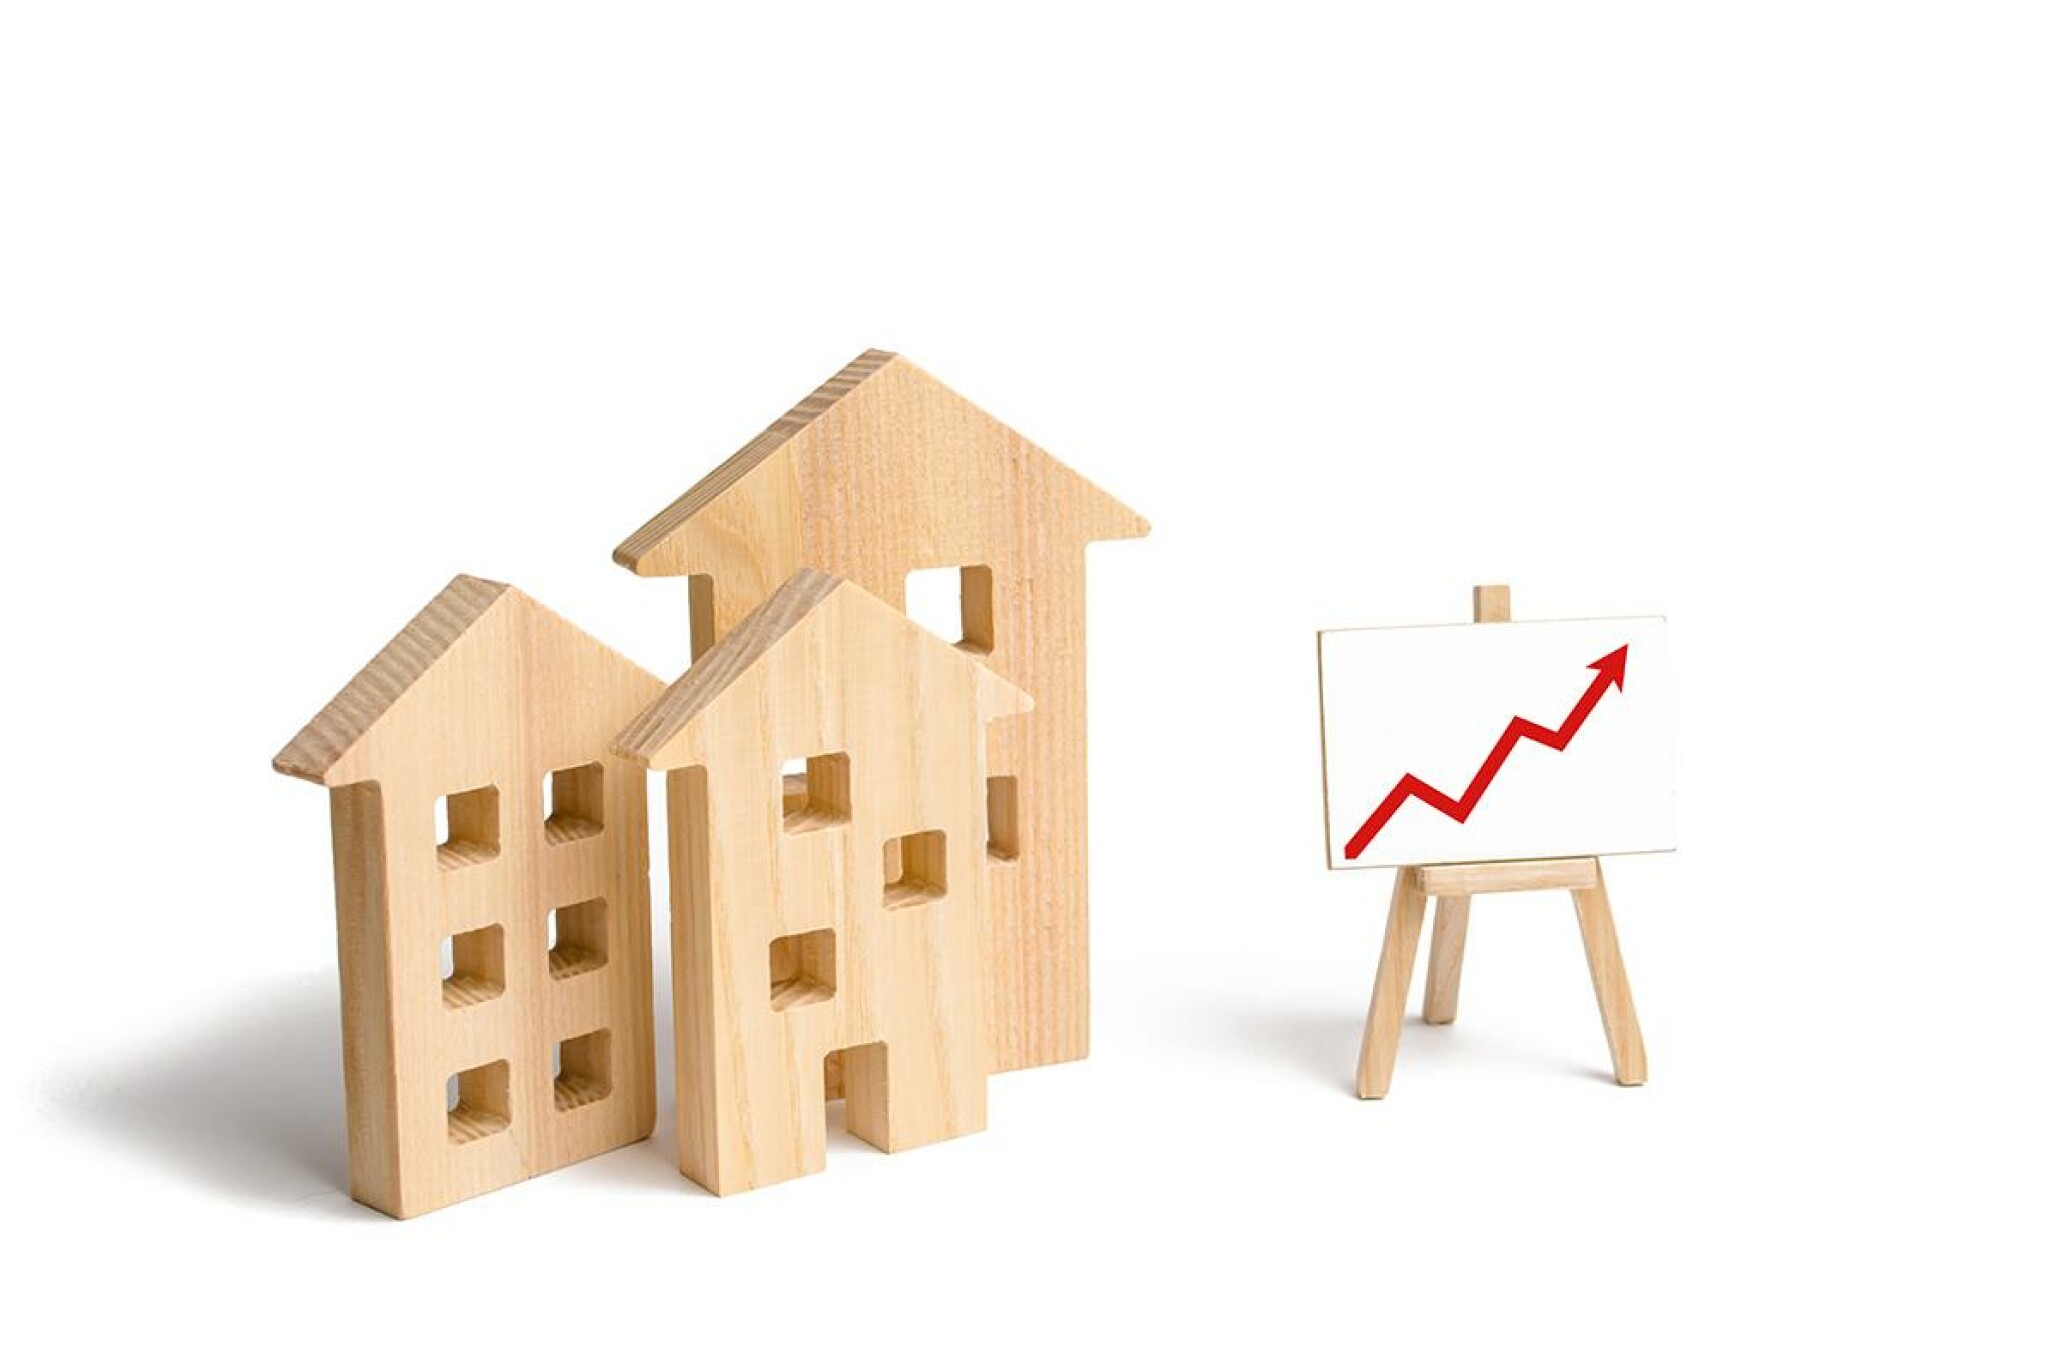 Ligera subida de los precios de las viviendas en la Costa Blanca en el 4º trimestre de 2020